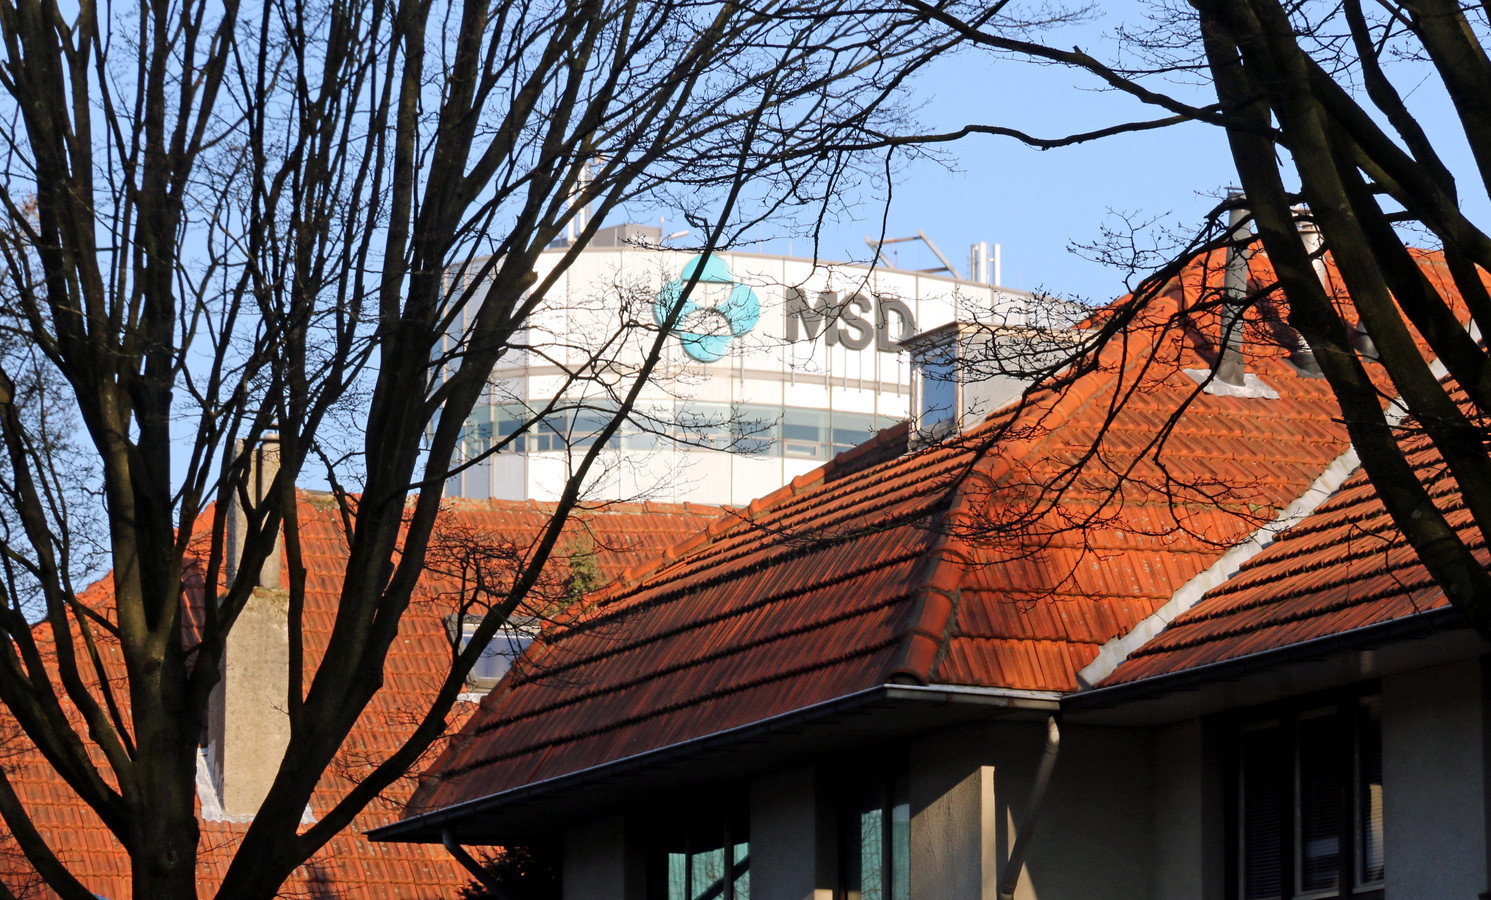 Het complex van MSD steekt uit boven de daken van de huizen in de Floraliastraat in Oss.  Op de ovalen toren staat inmiddels overigens het Organon-logo.